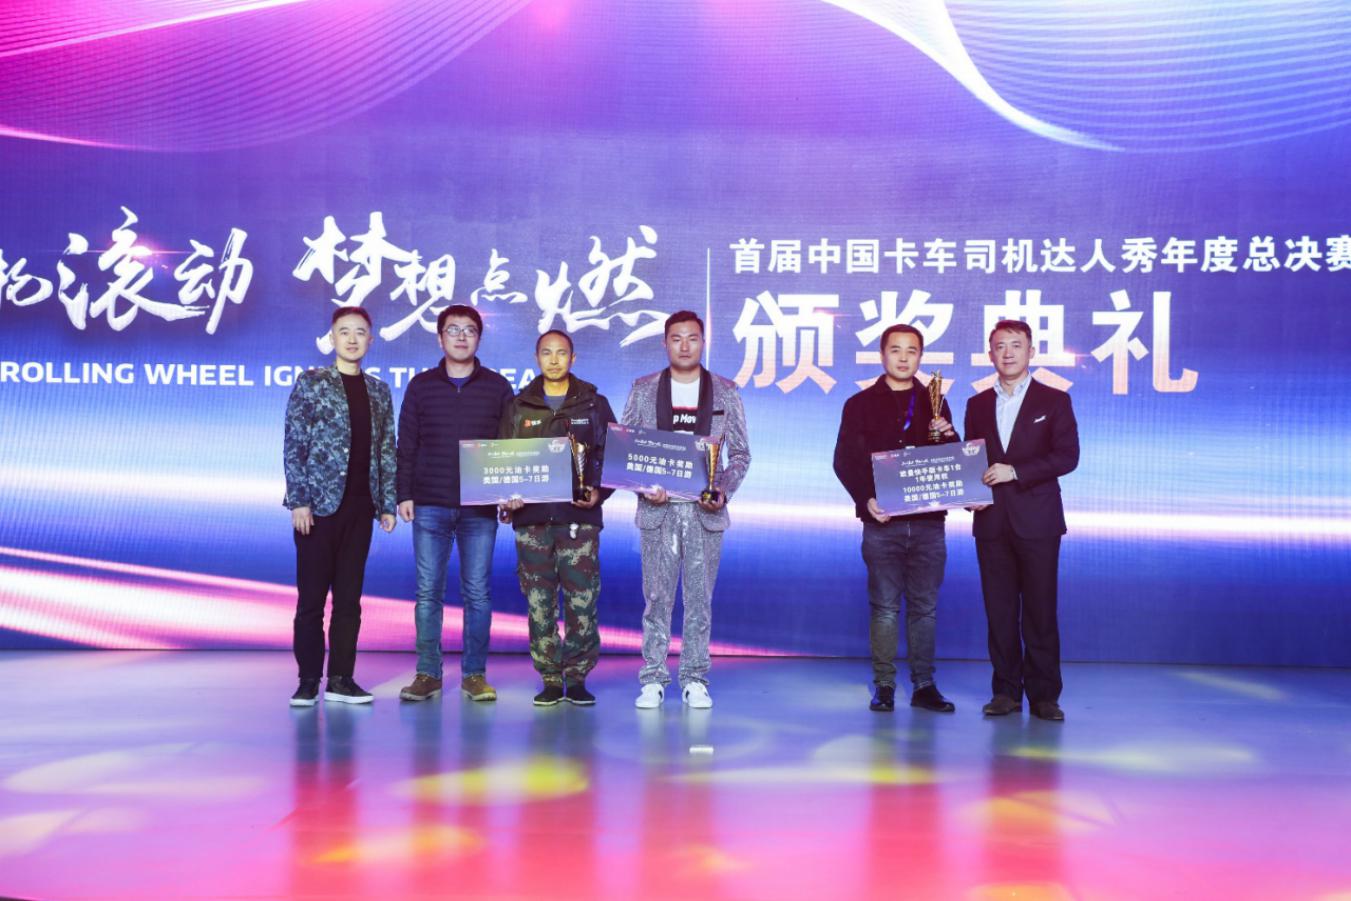 香港国际快递-关爱青年计划第二届年度人物启动 首届中国卡车司机达人秀总决赛打造“卡车人春晚”